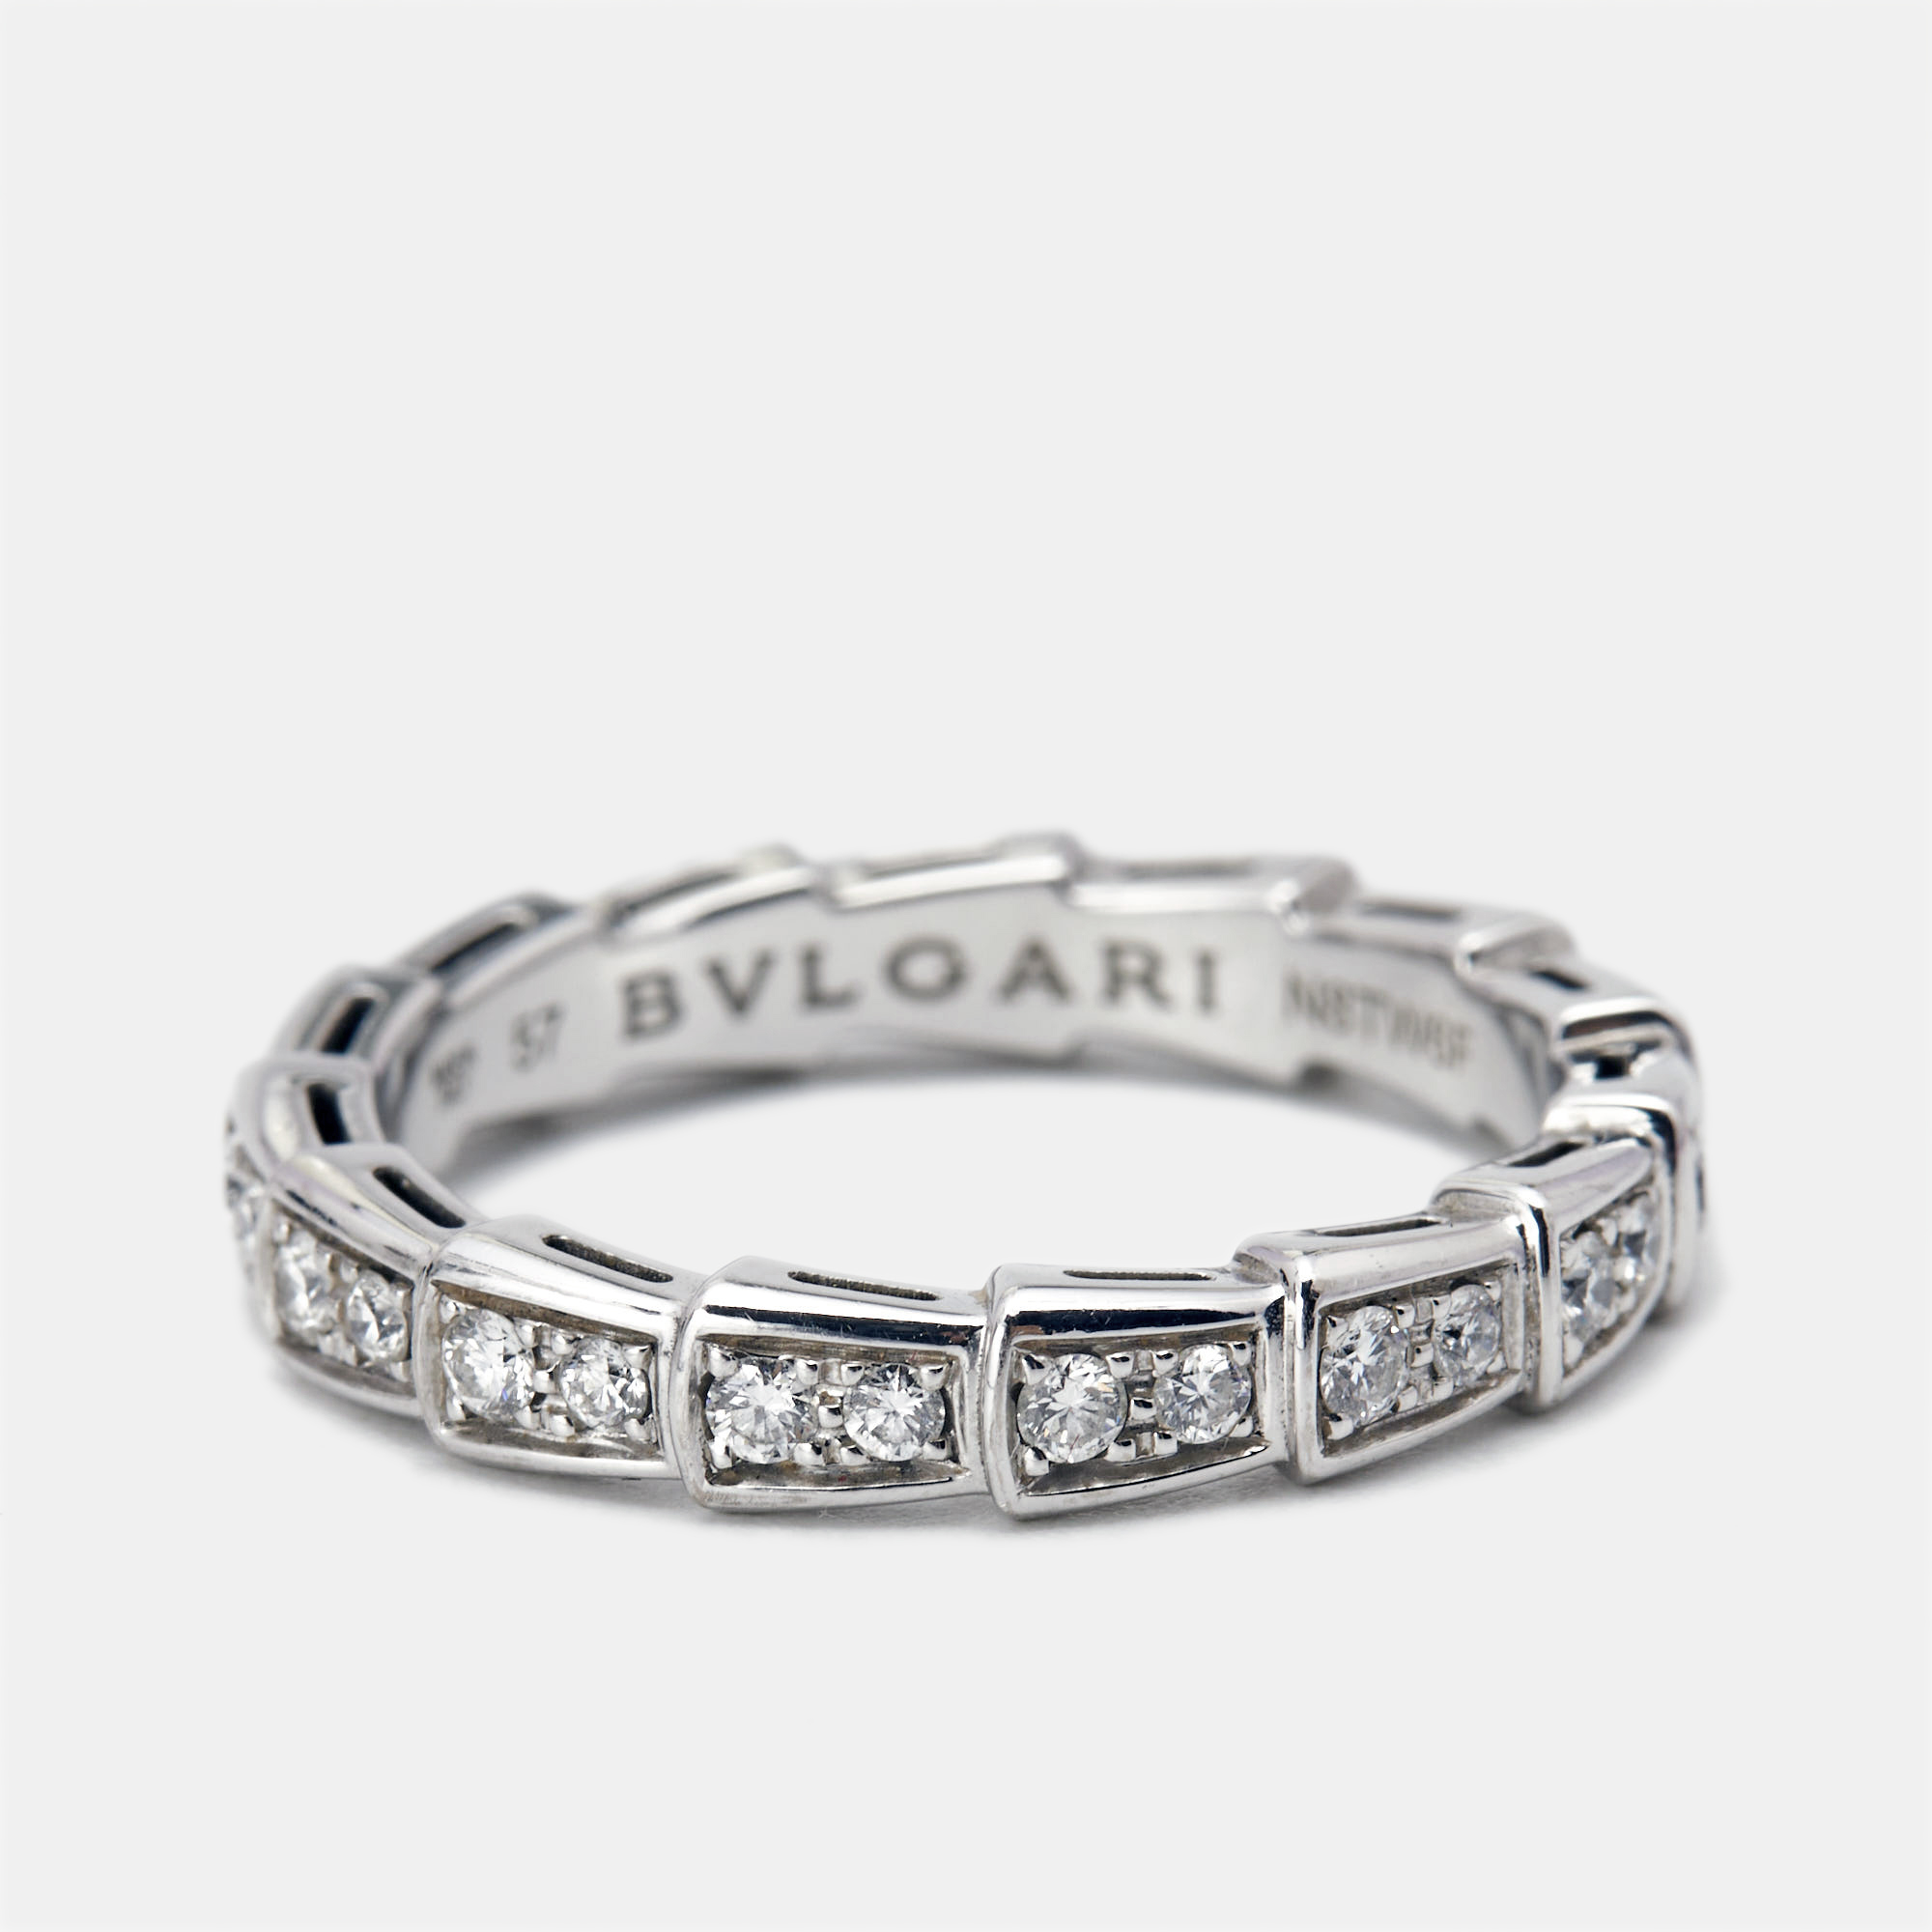 

Bvlgari Serpenti Viper Diamonds 18k White Gold Ring Size